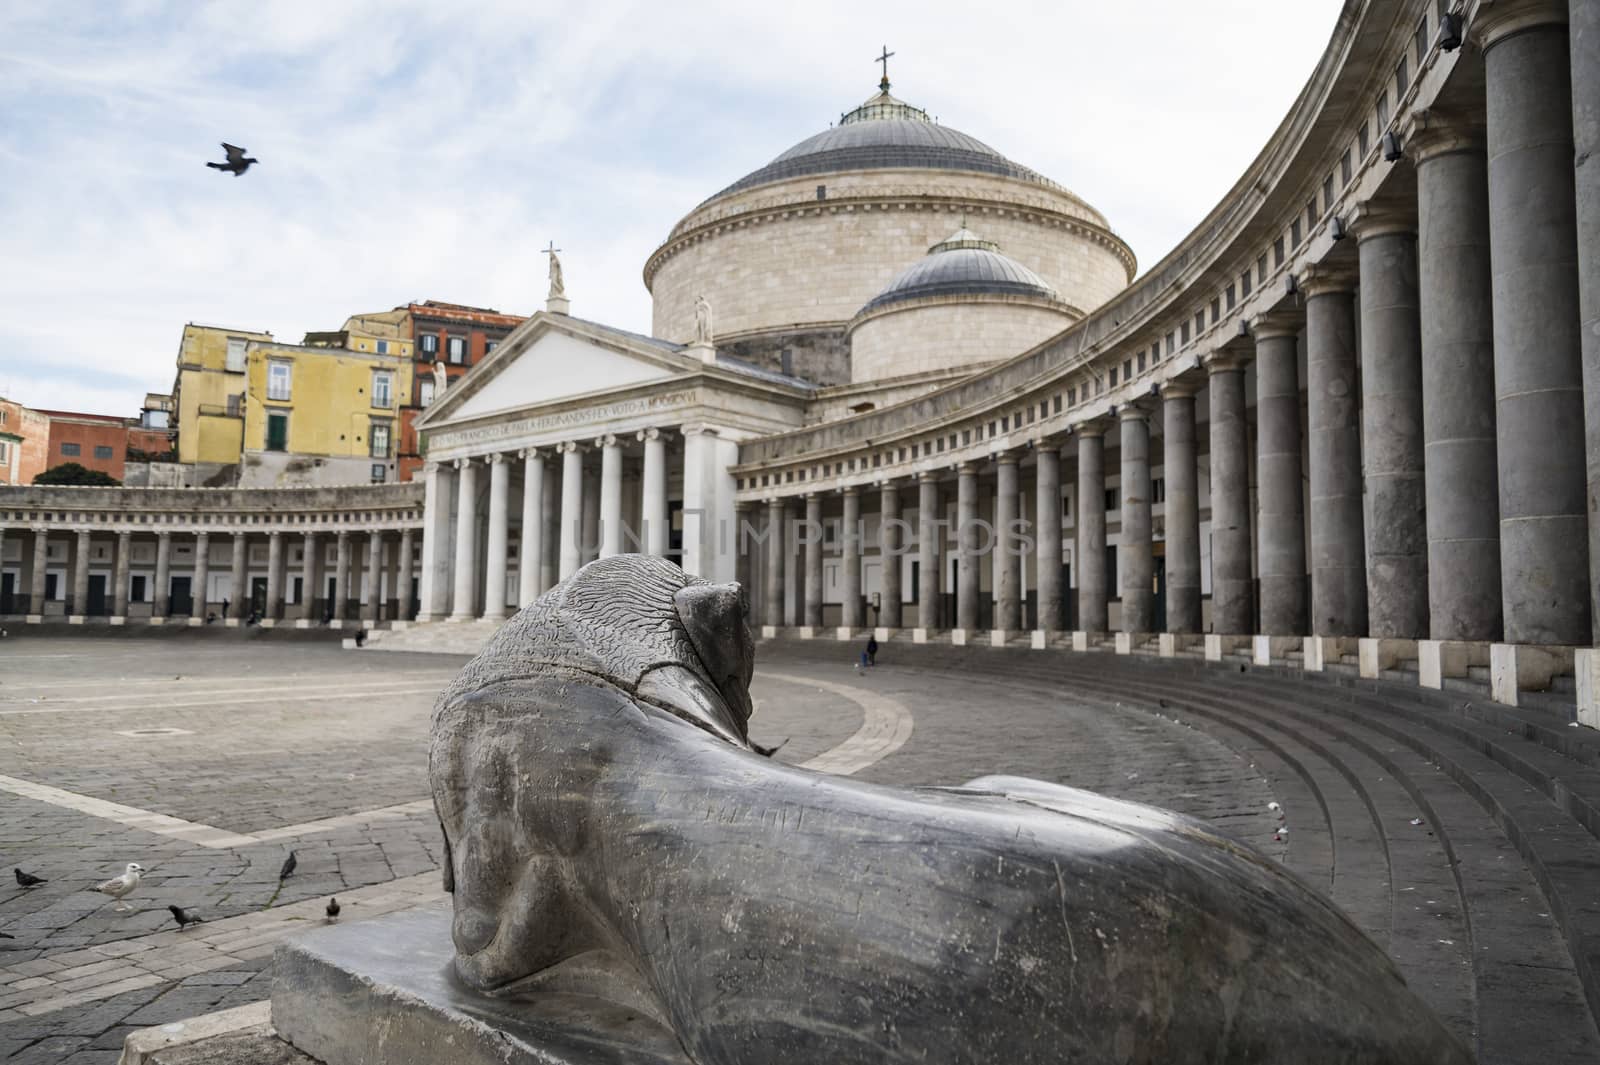 View of Piazza del Plebiscito with equestrian statue, Naples,Italy